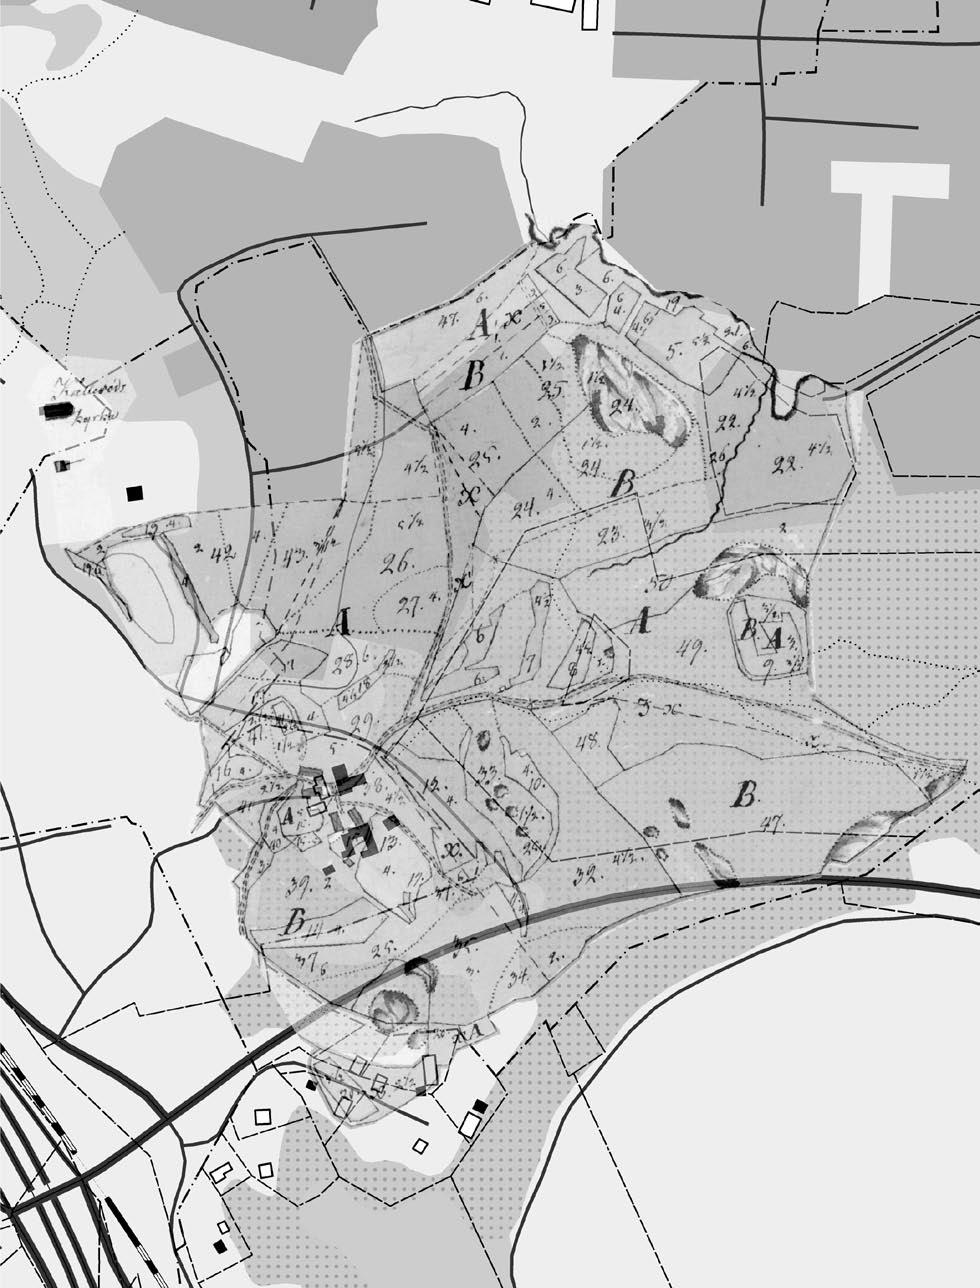 0 100 m Fig. 10. Kartan från 1812 lagd ovanpå dagens fastighetskarta. Bearbetning C. Rosén. Kartakt i Lantmäteriets forskningsarkiv N60-3:1.